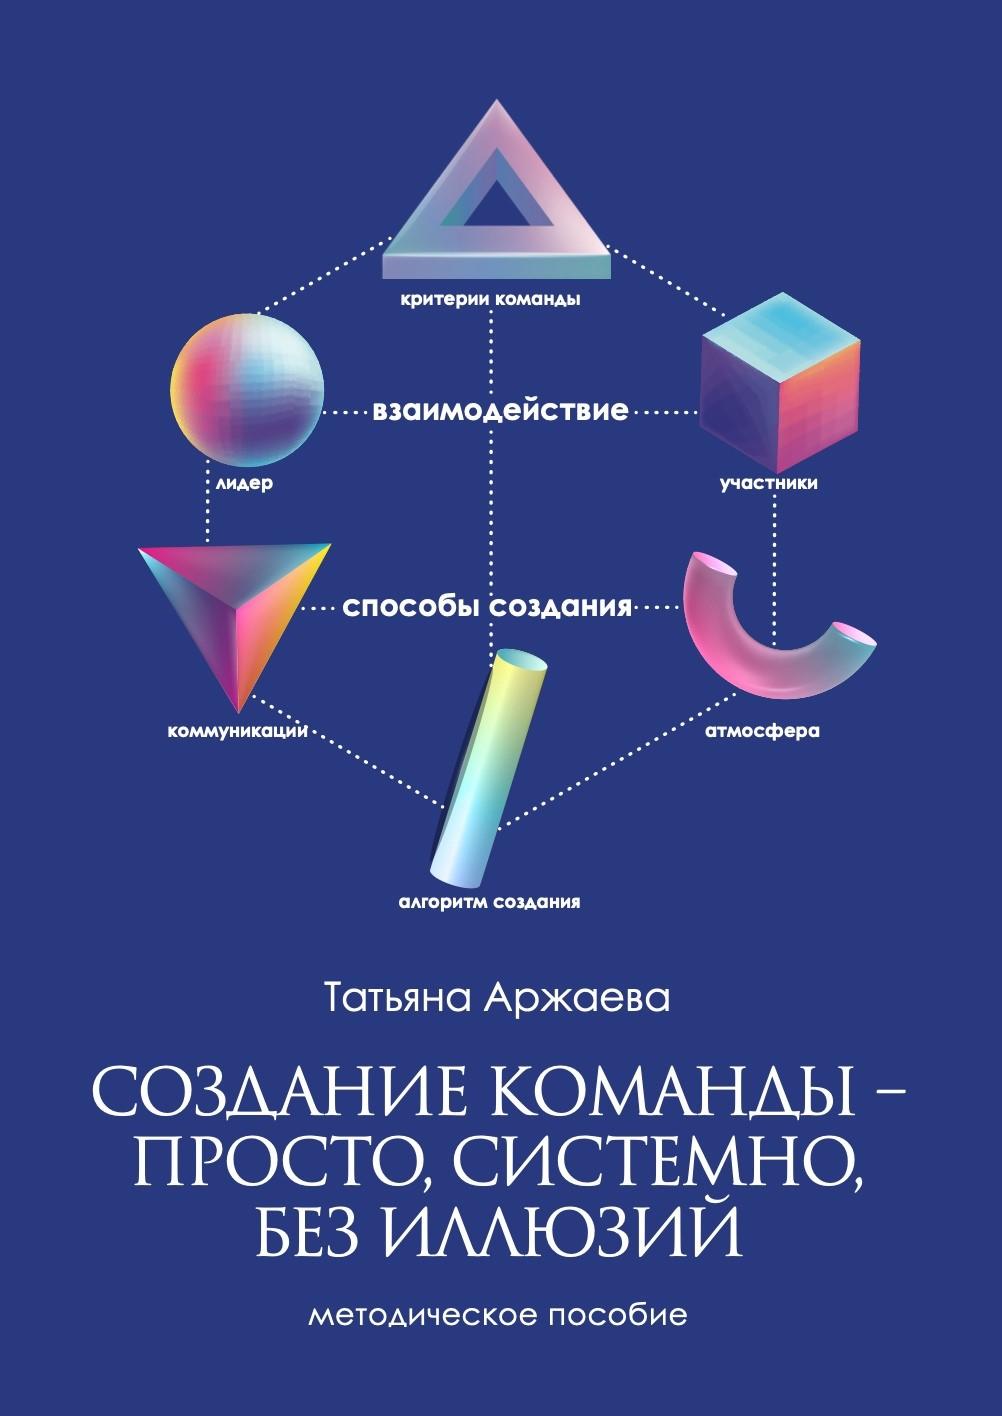 В июле издана книга "Создание команды - просто, системно, без иллюзий".